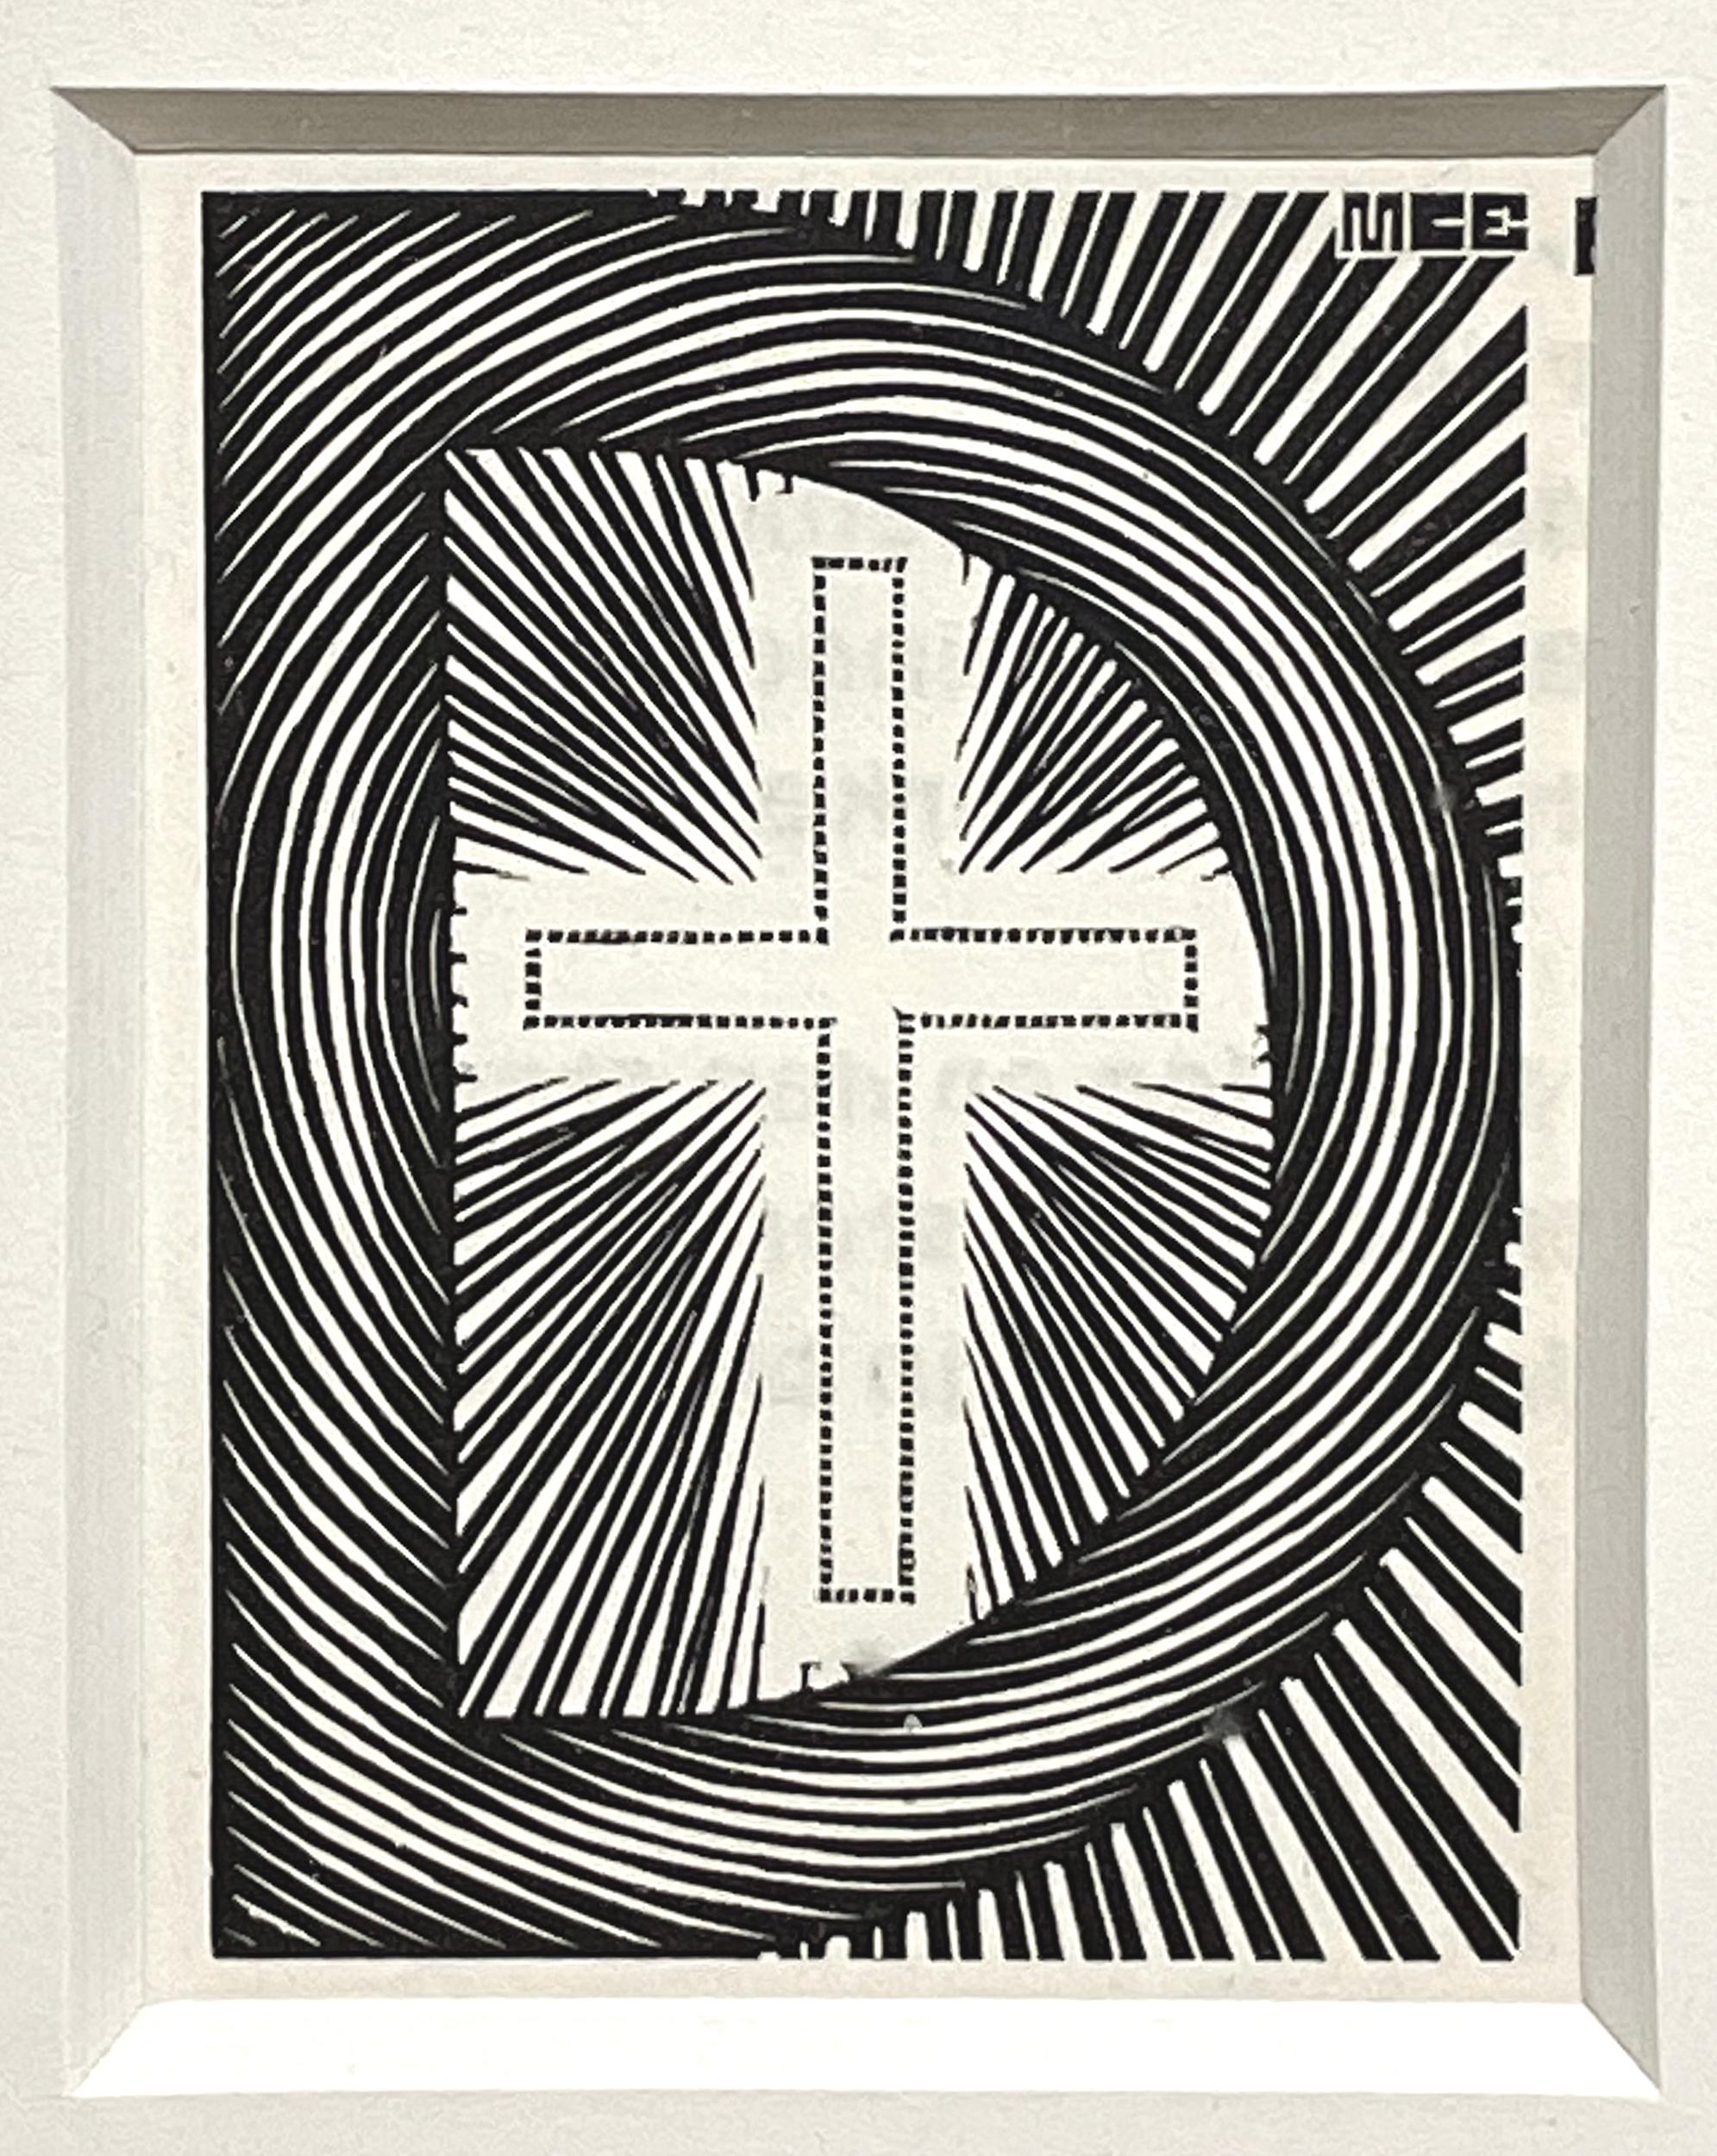 Initial "D" - Print by M.C. Escher